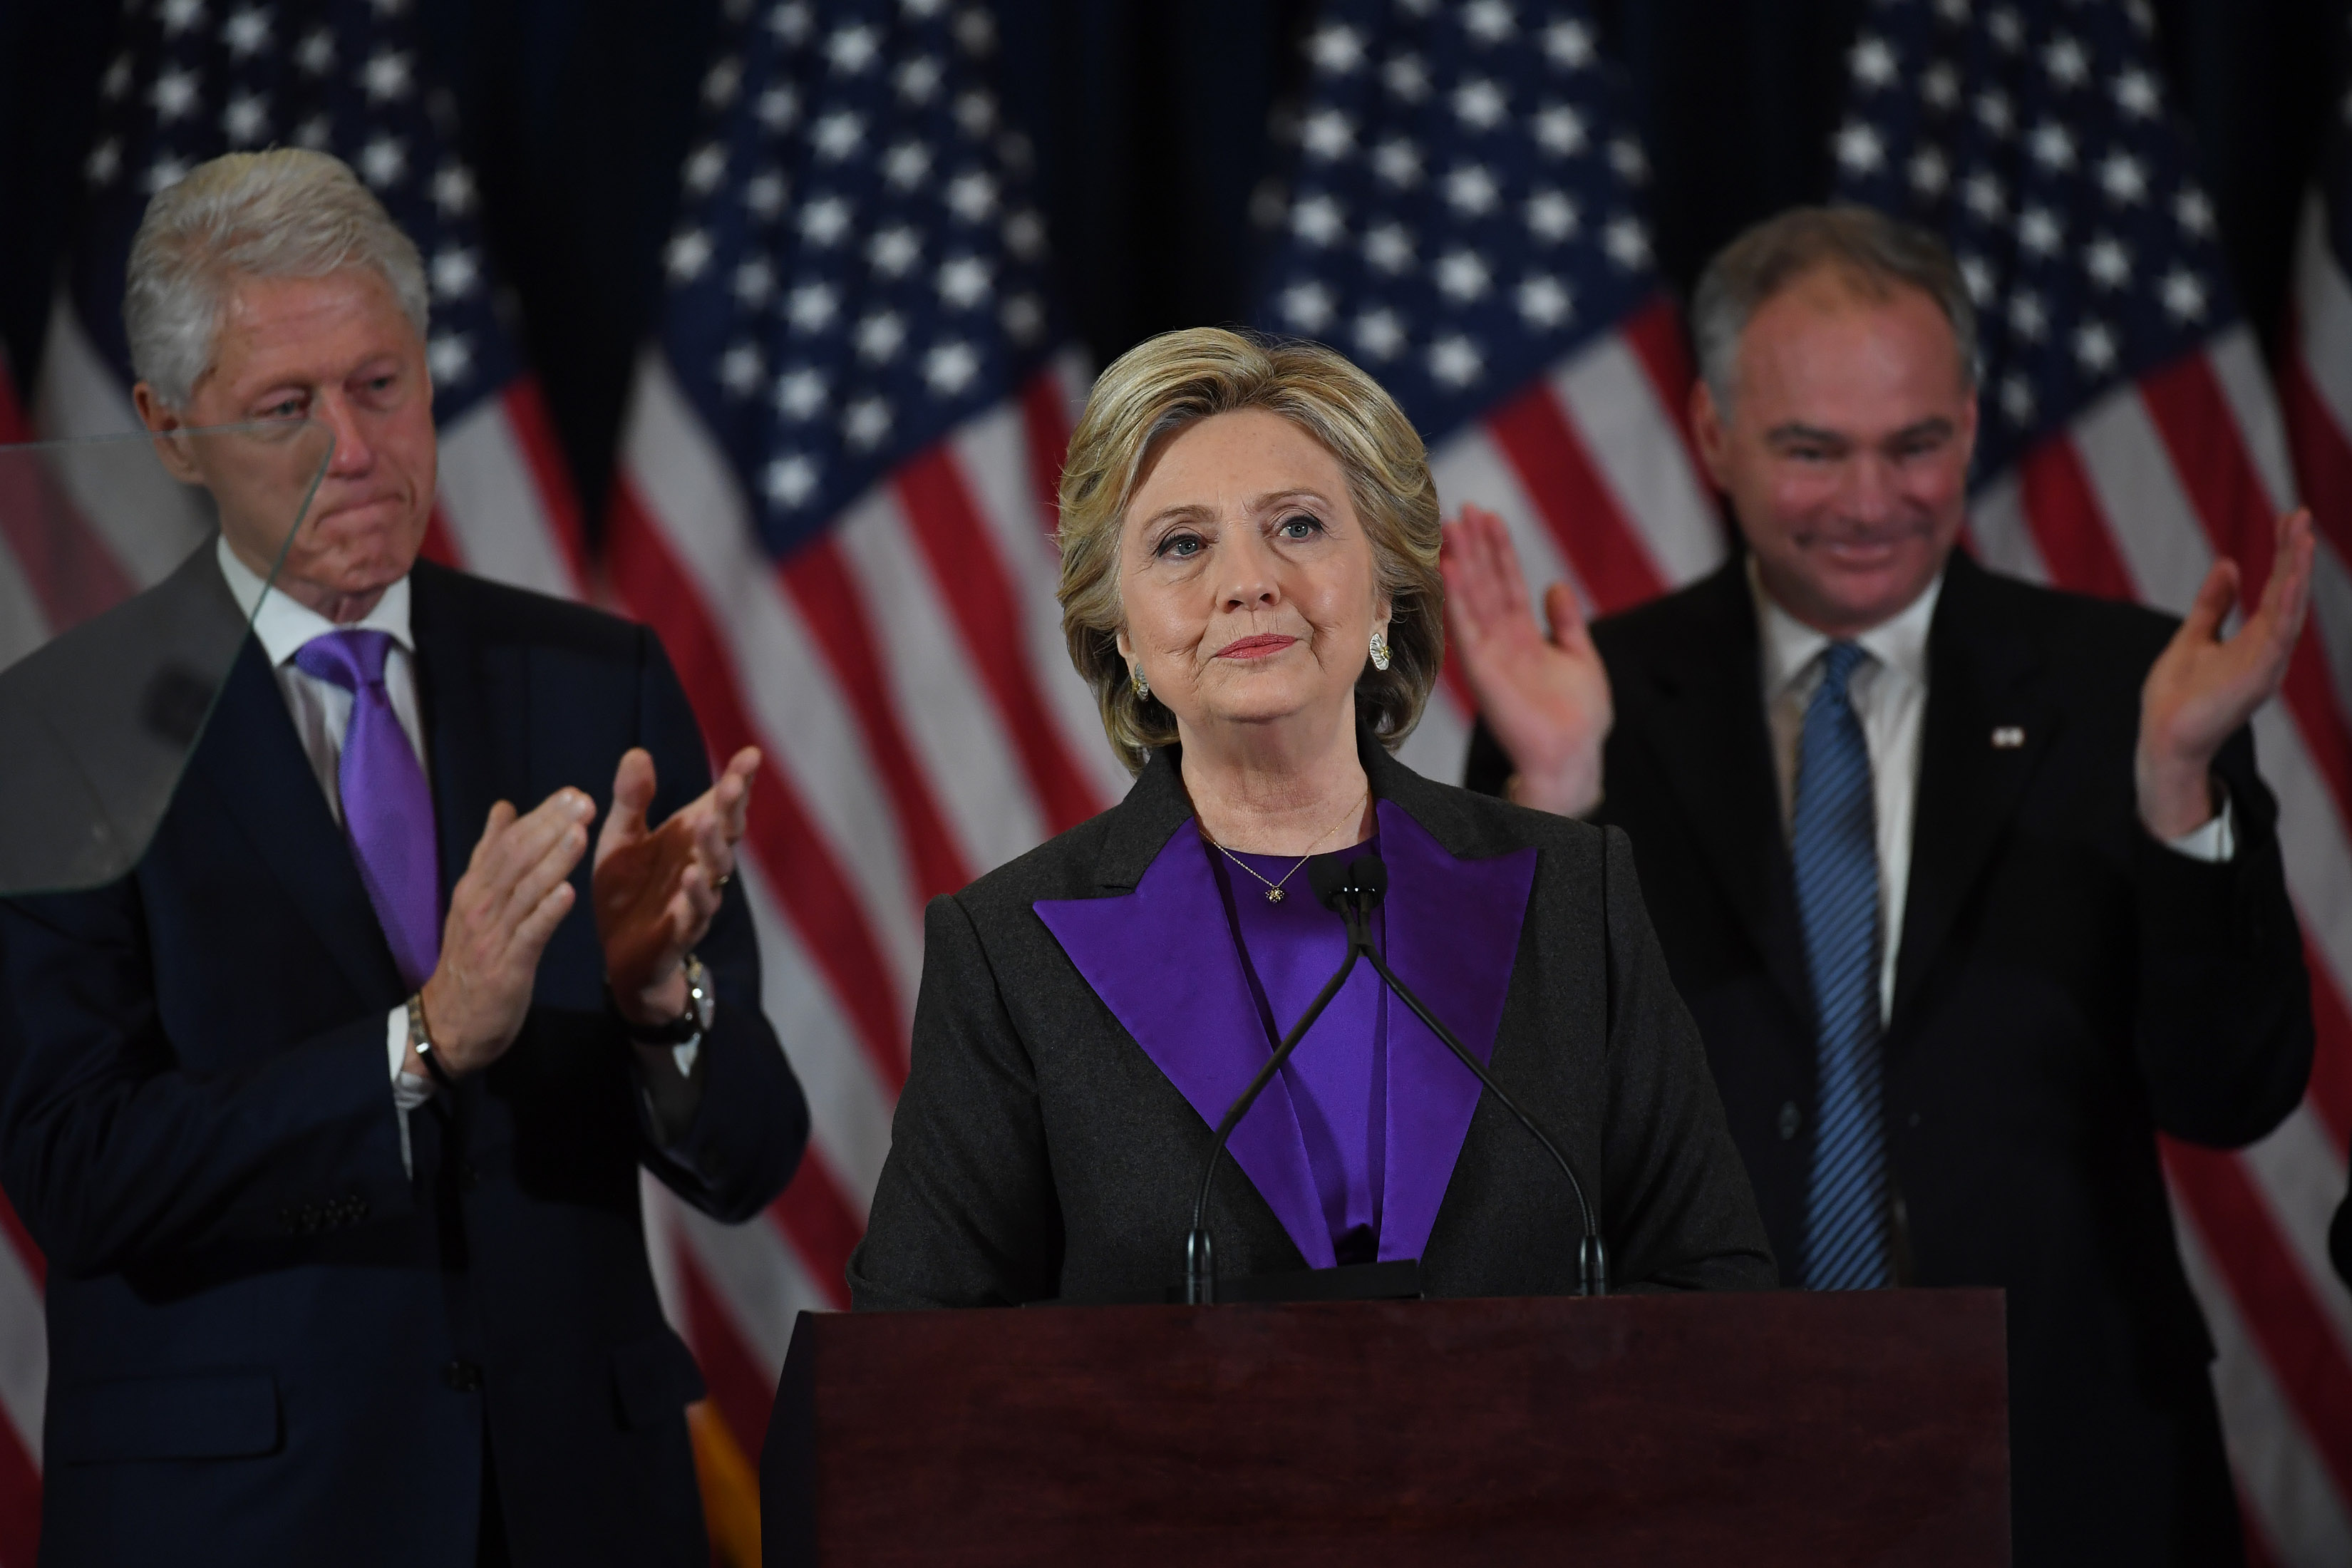 Hillary Clinton Press Conference - New York, NY